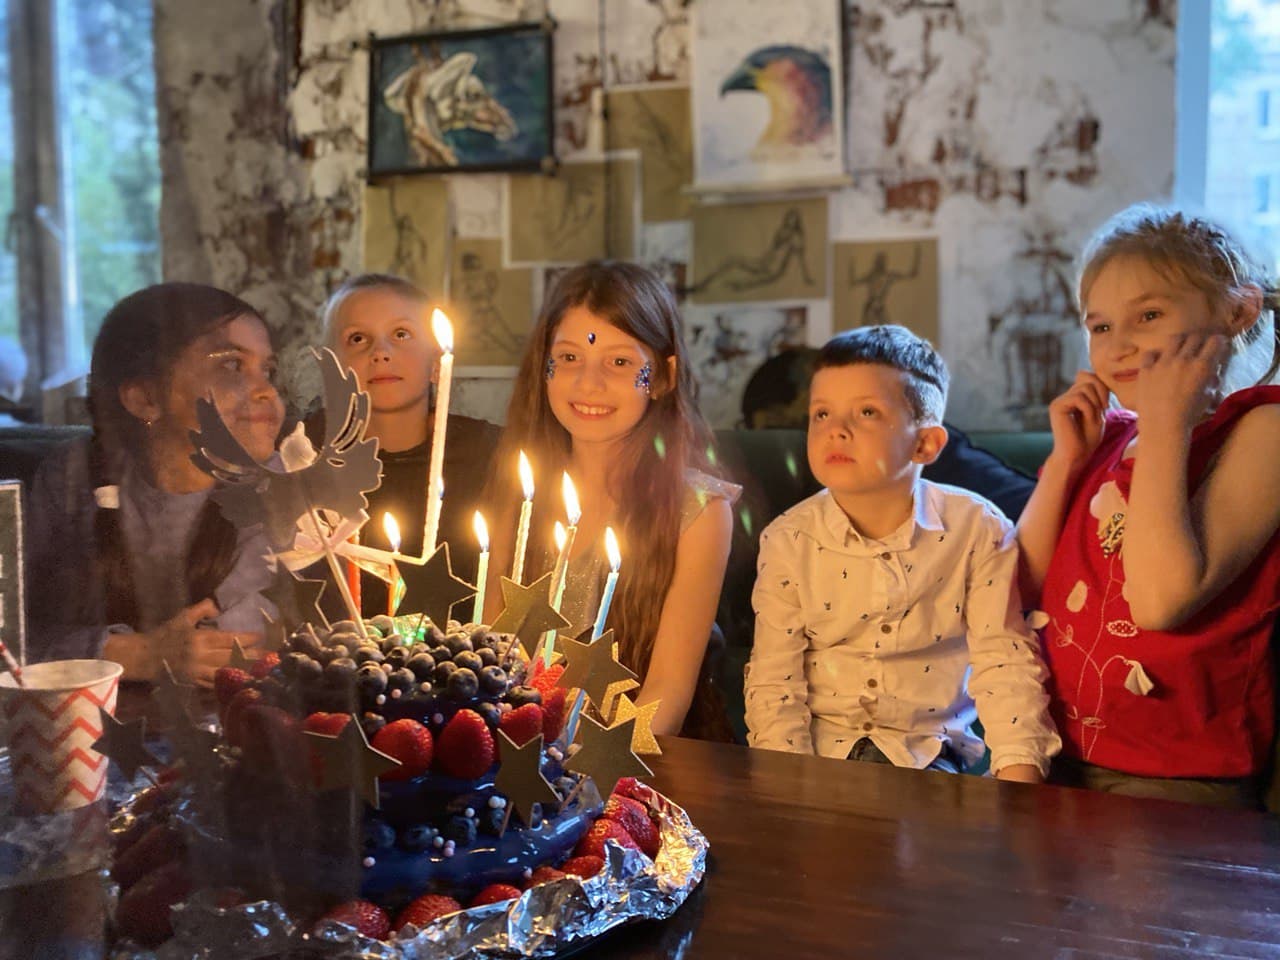 аренда кинозала снять лофт праздник день рождения кофе антикафе дети